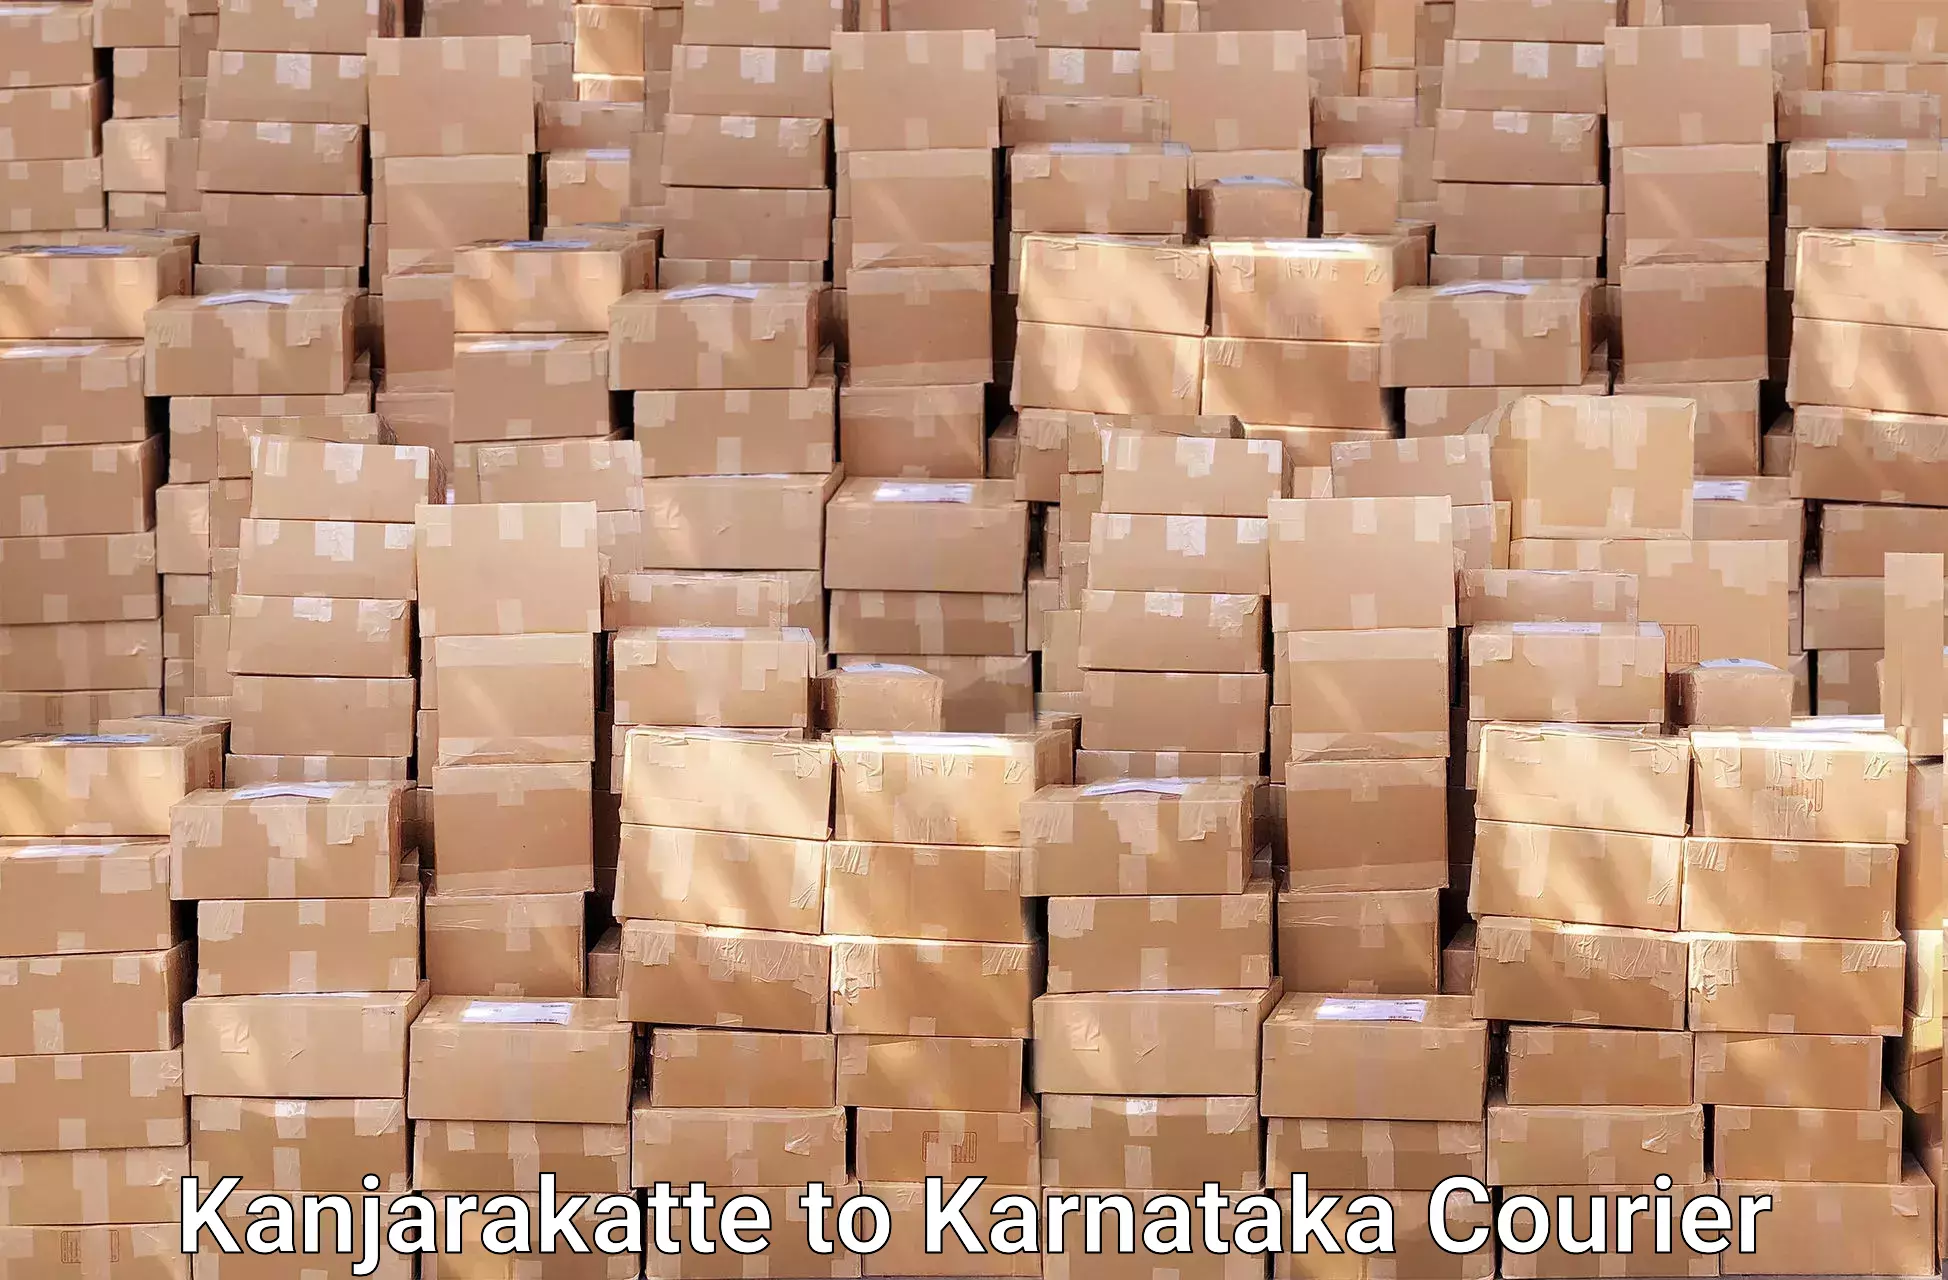 Furniture moving assistance Kanjarakatte to Karnataka